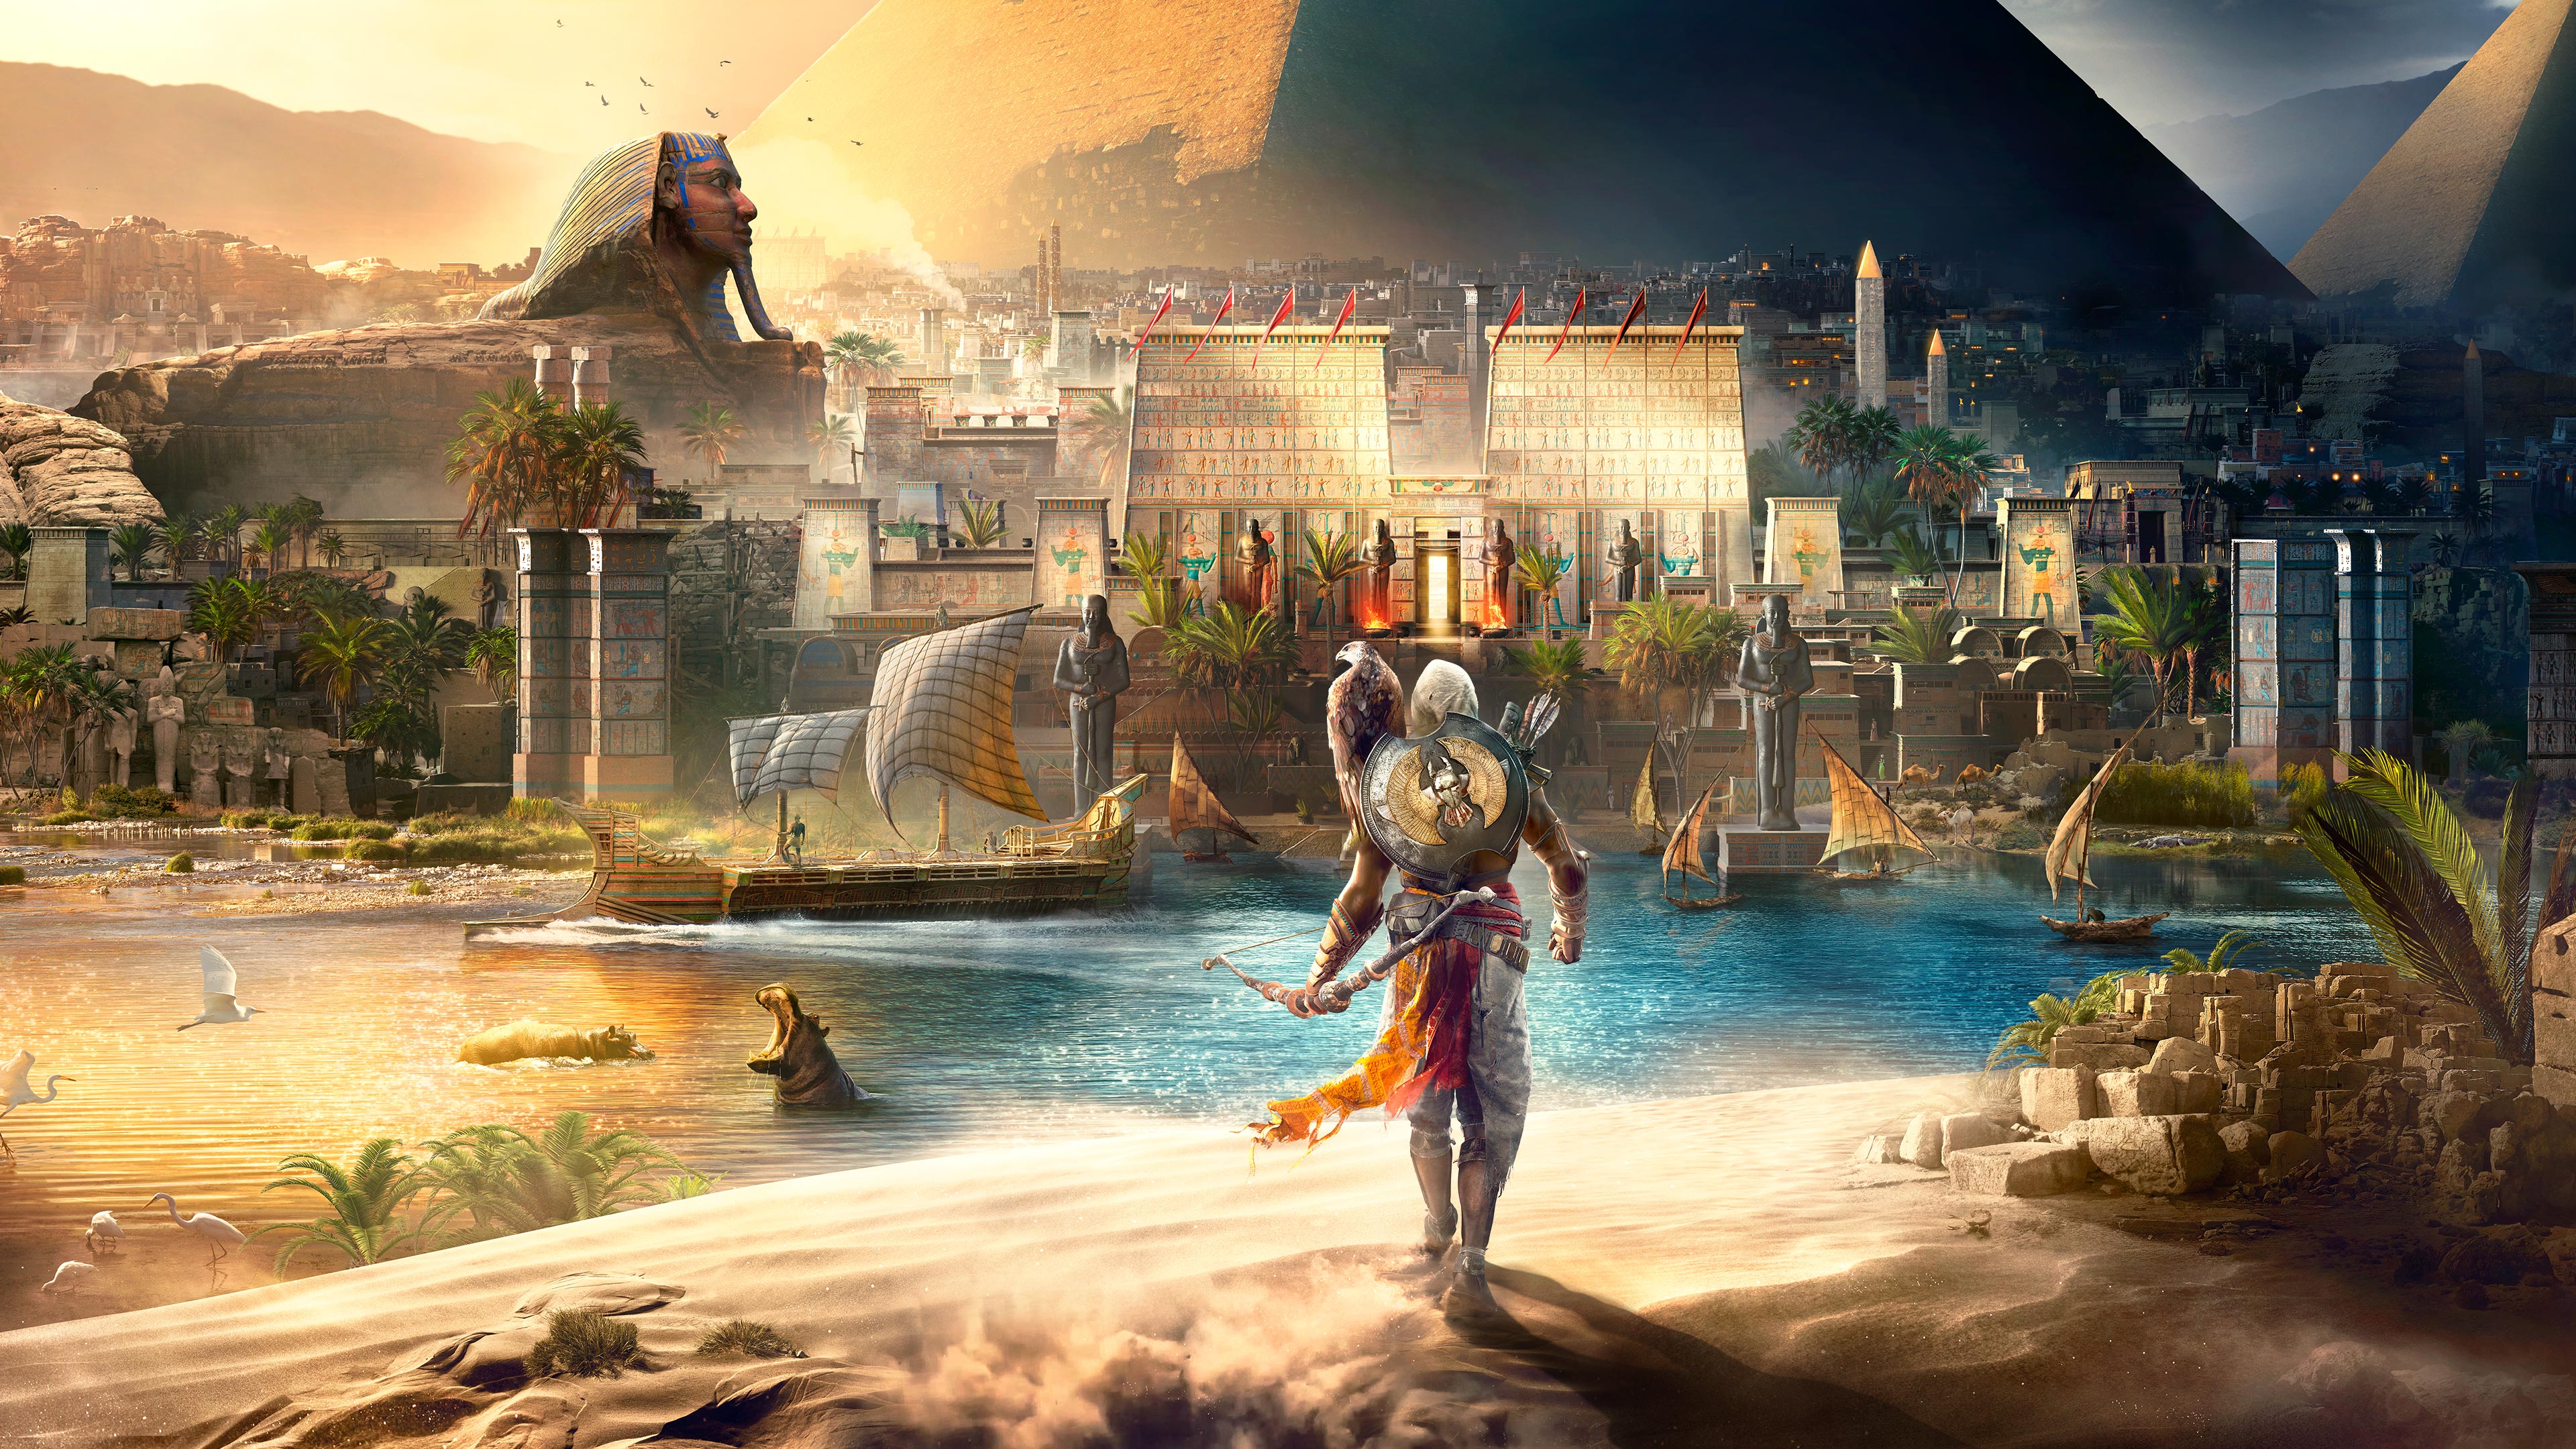 Assassin's Creed® Origins - デラックスエディション